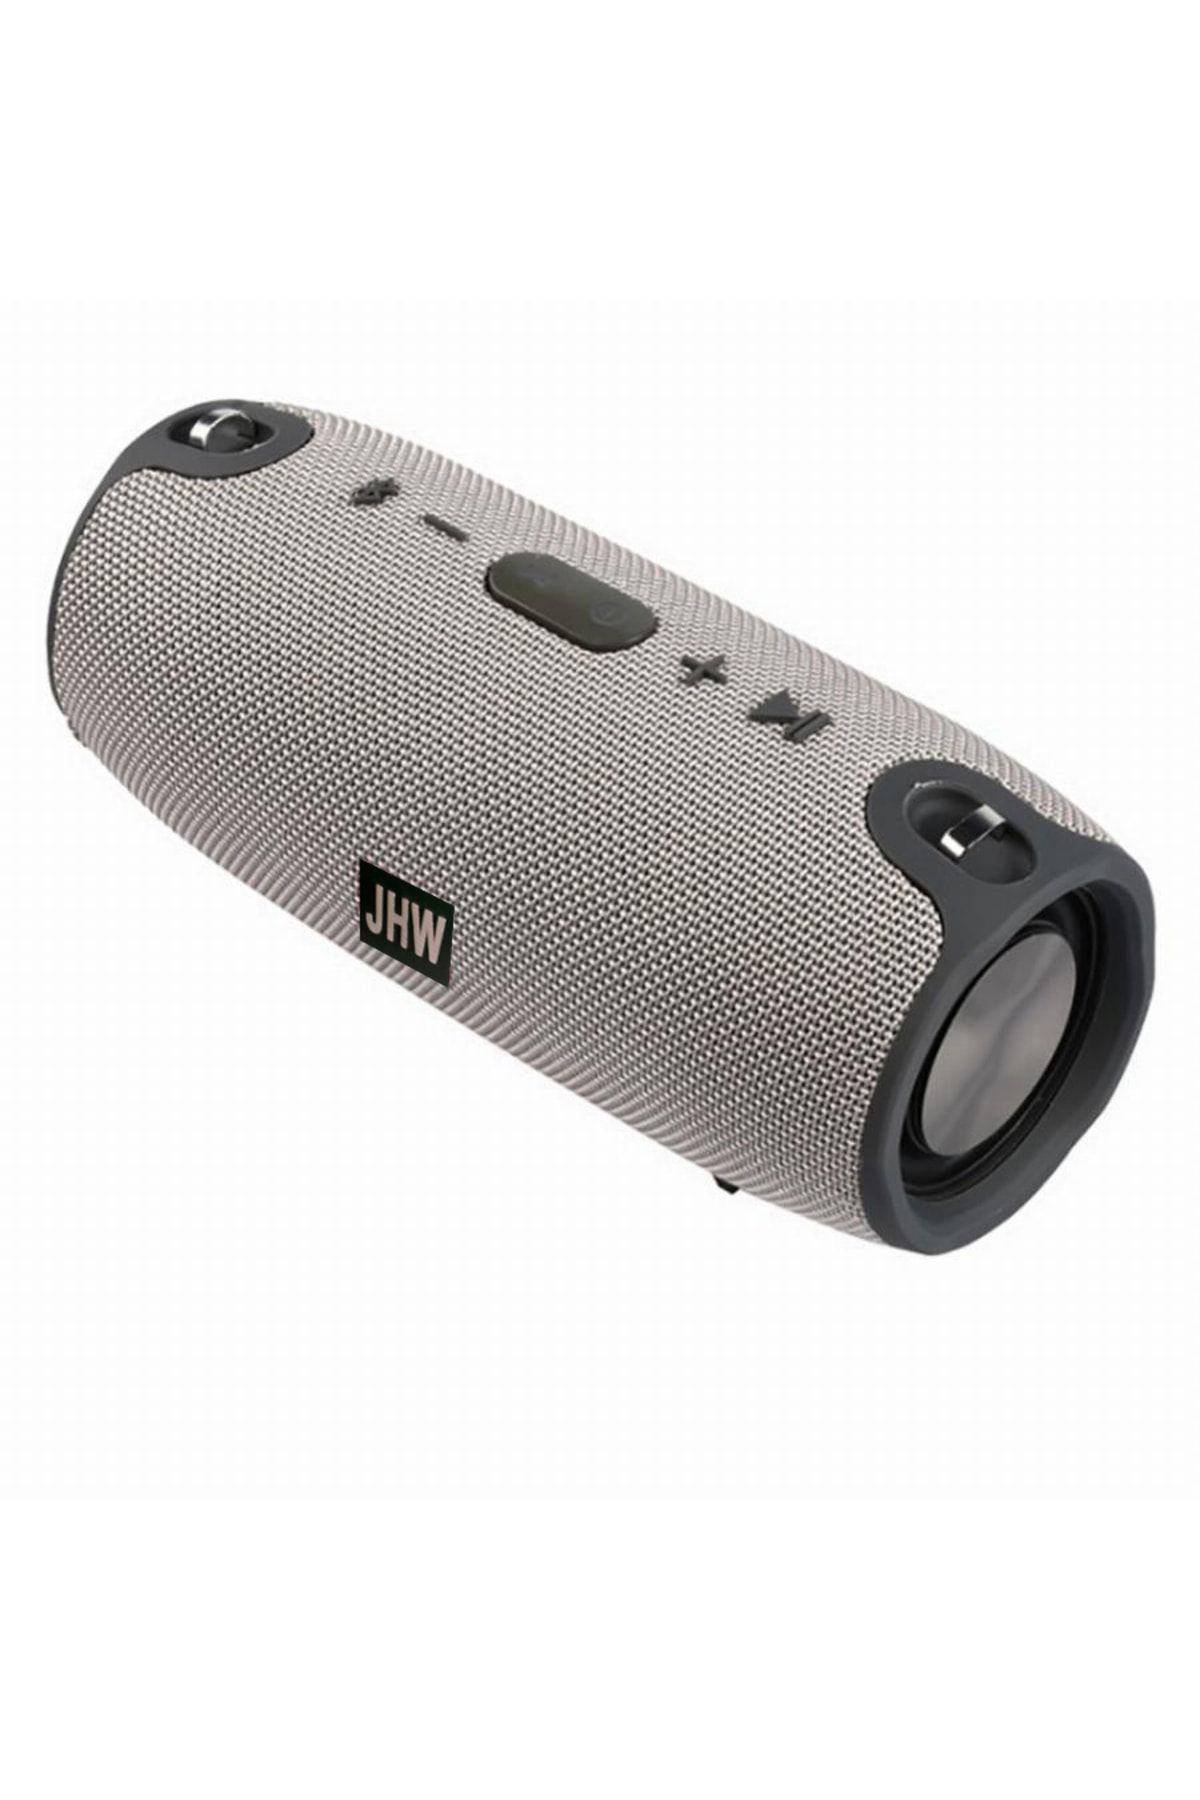 Twinix Xtreme Orta Boy Bluetooth Hoparlör Su Geçirmez Taşınabilir Kablosuz Ses Bombası